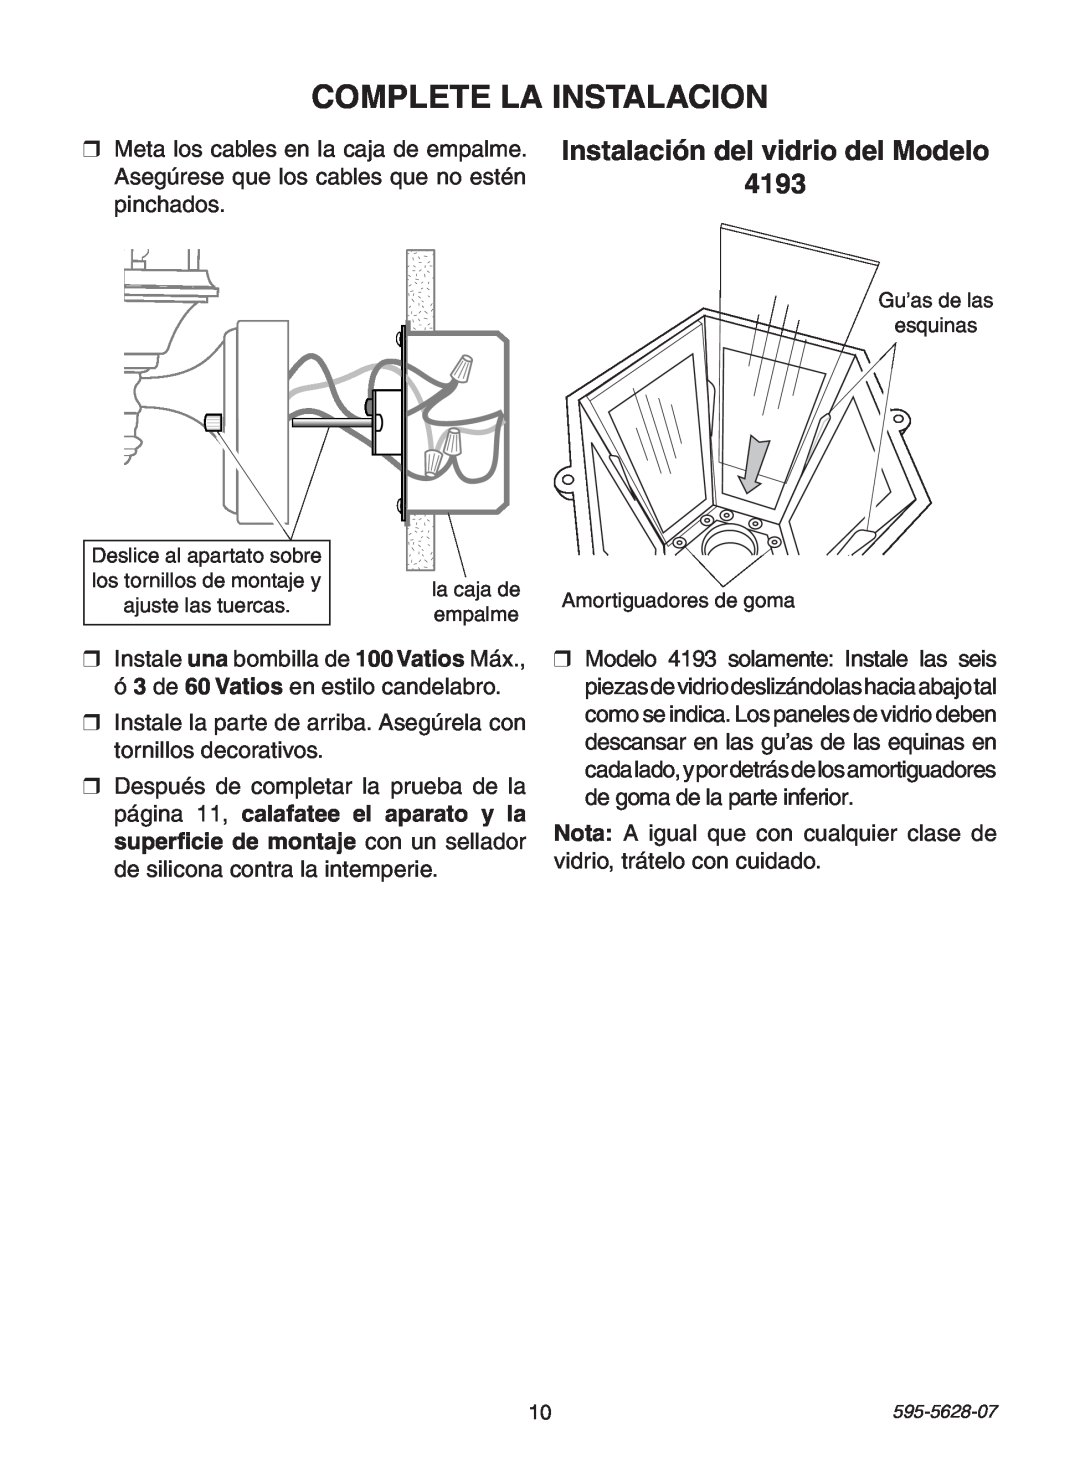 Heath Zenith SL-4190 manual Complete La Instalacion, Instalación del vidrio del Modelo 4193 